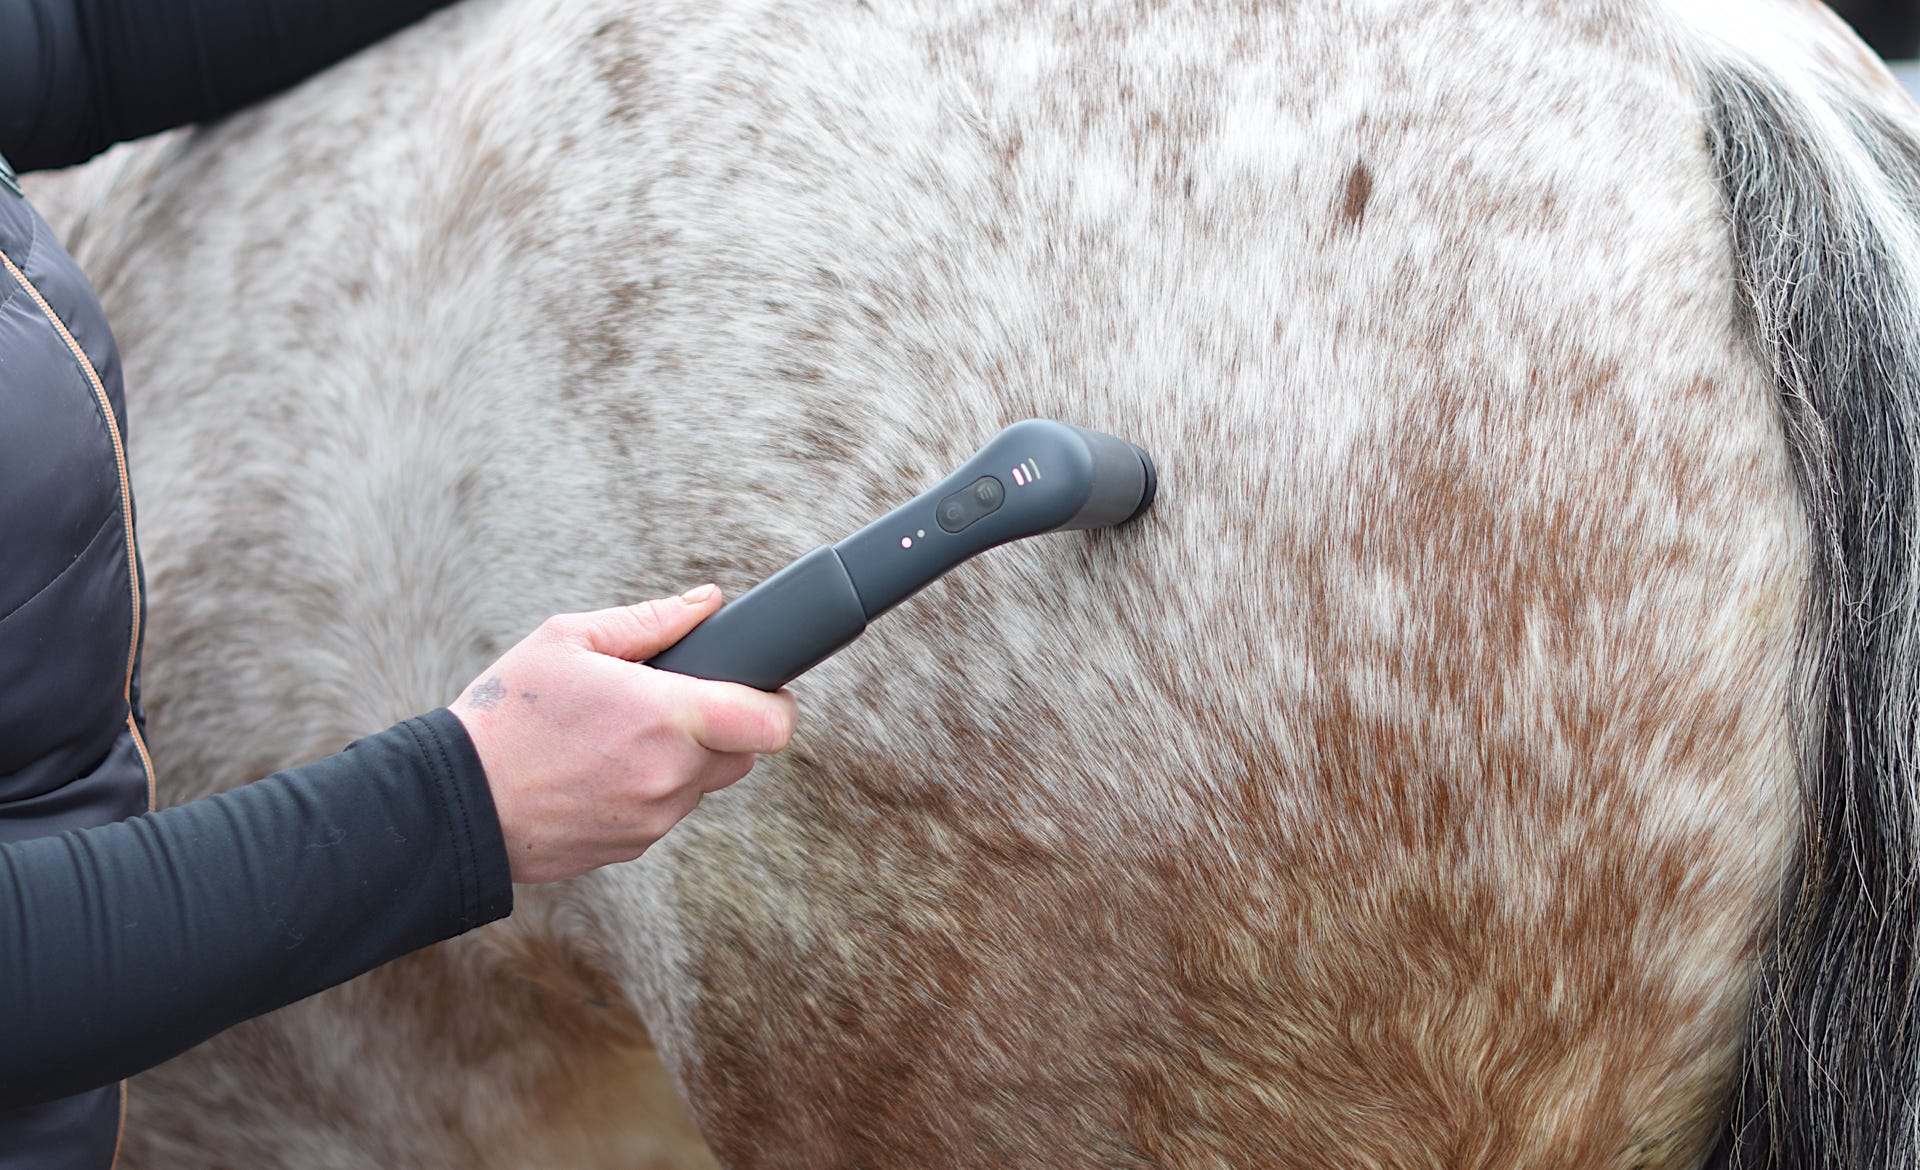 Anwendug der Vibrationstherapie an der Hüfte eines Pferdes.